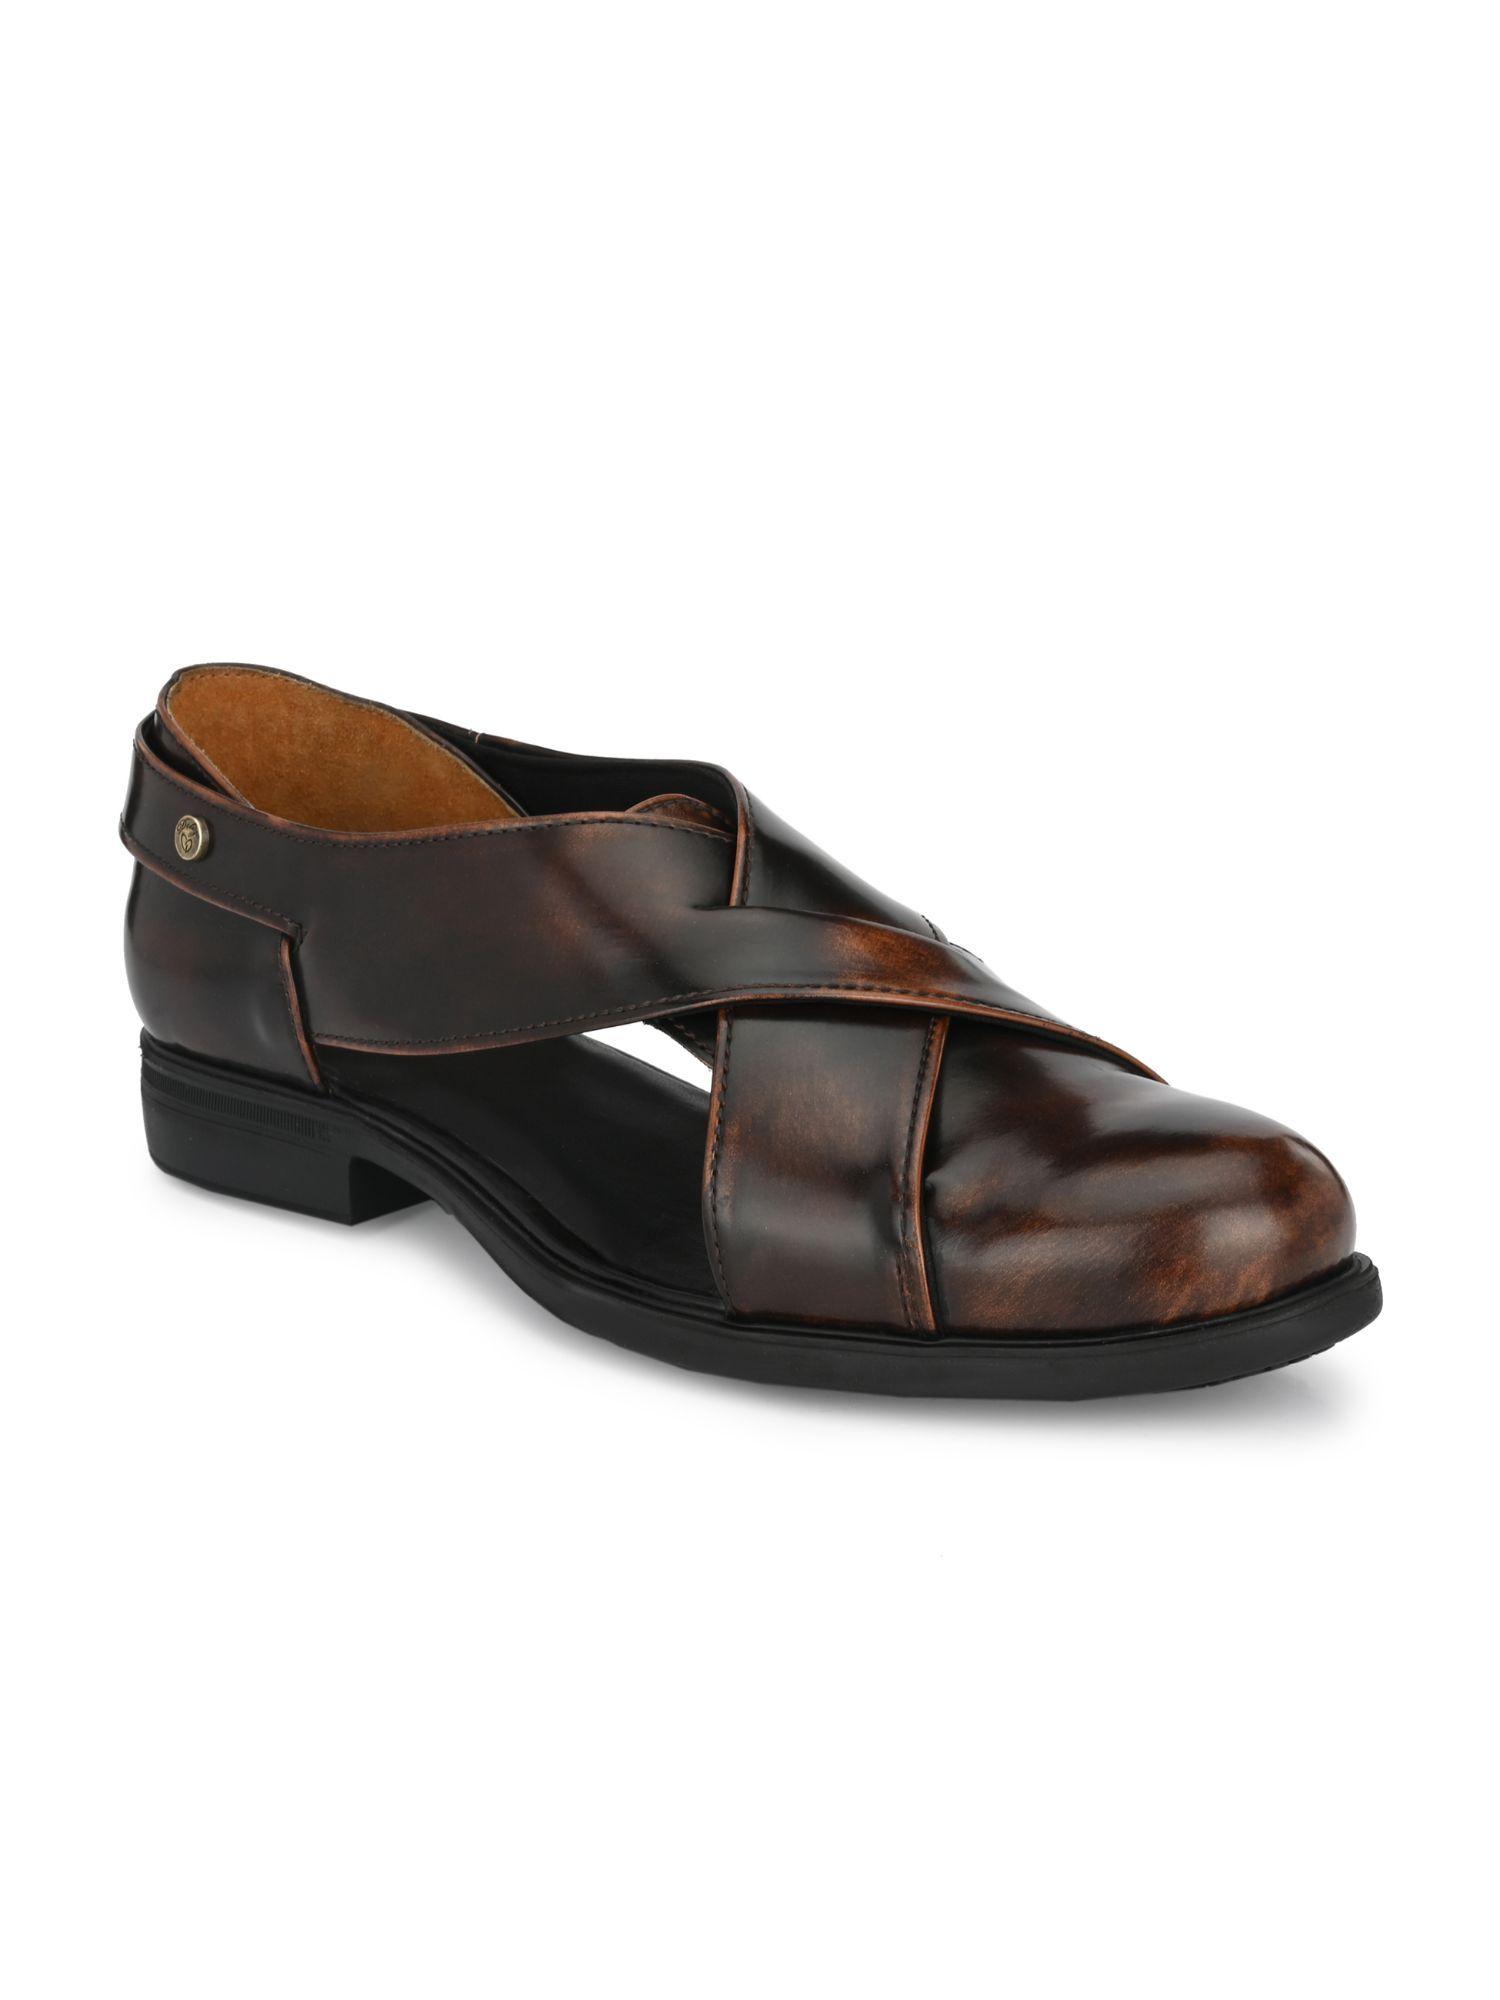 mens-brown-roman-casual-sandals